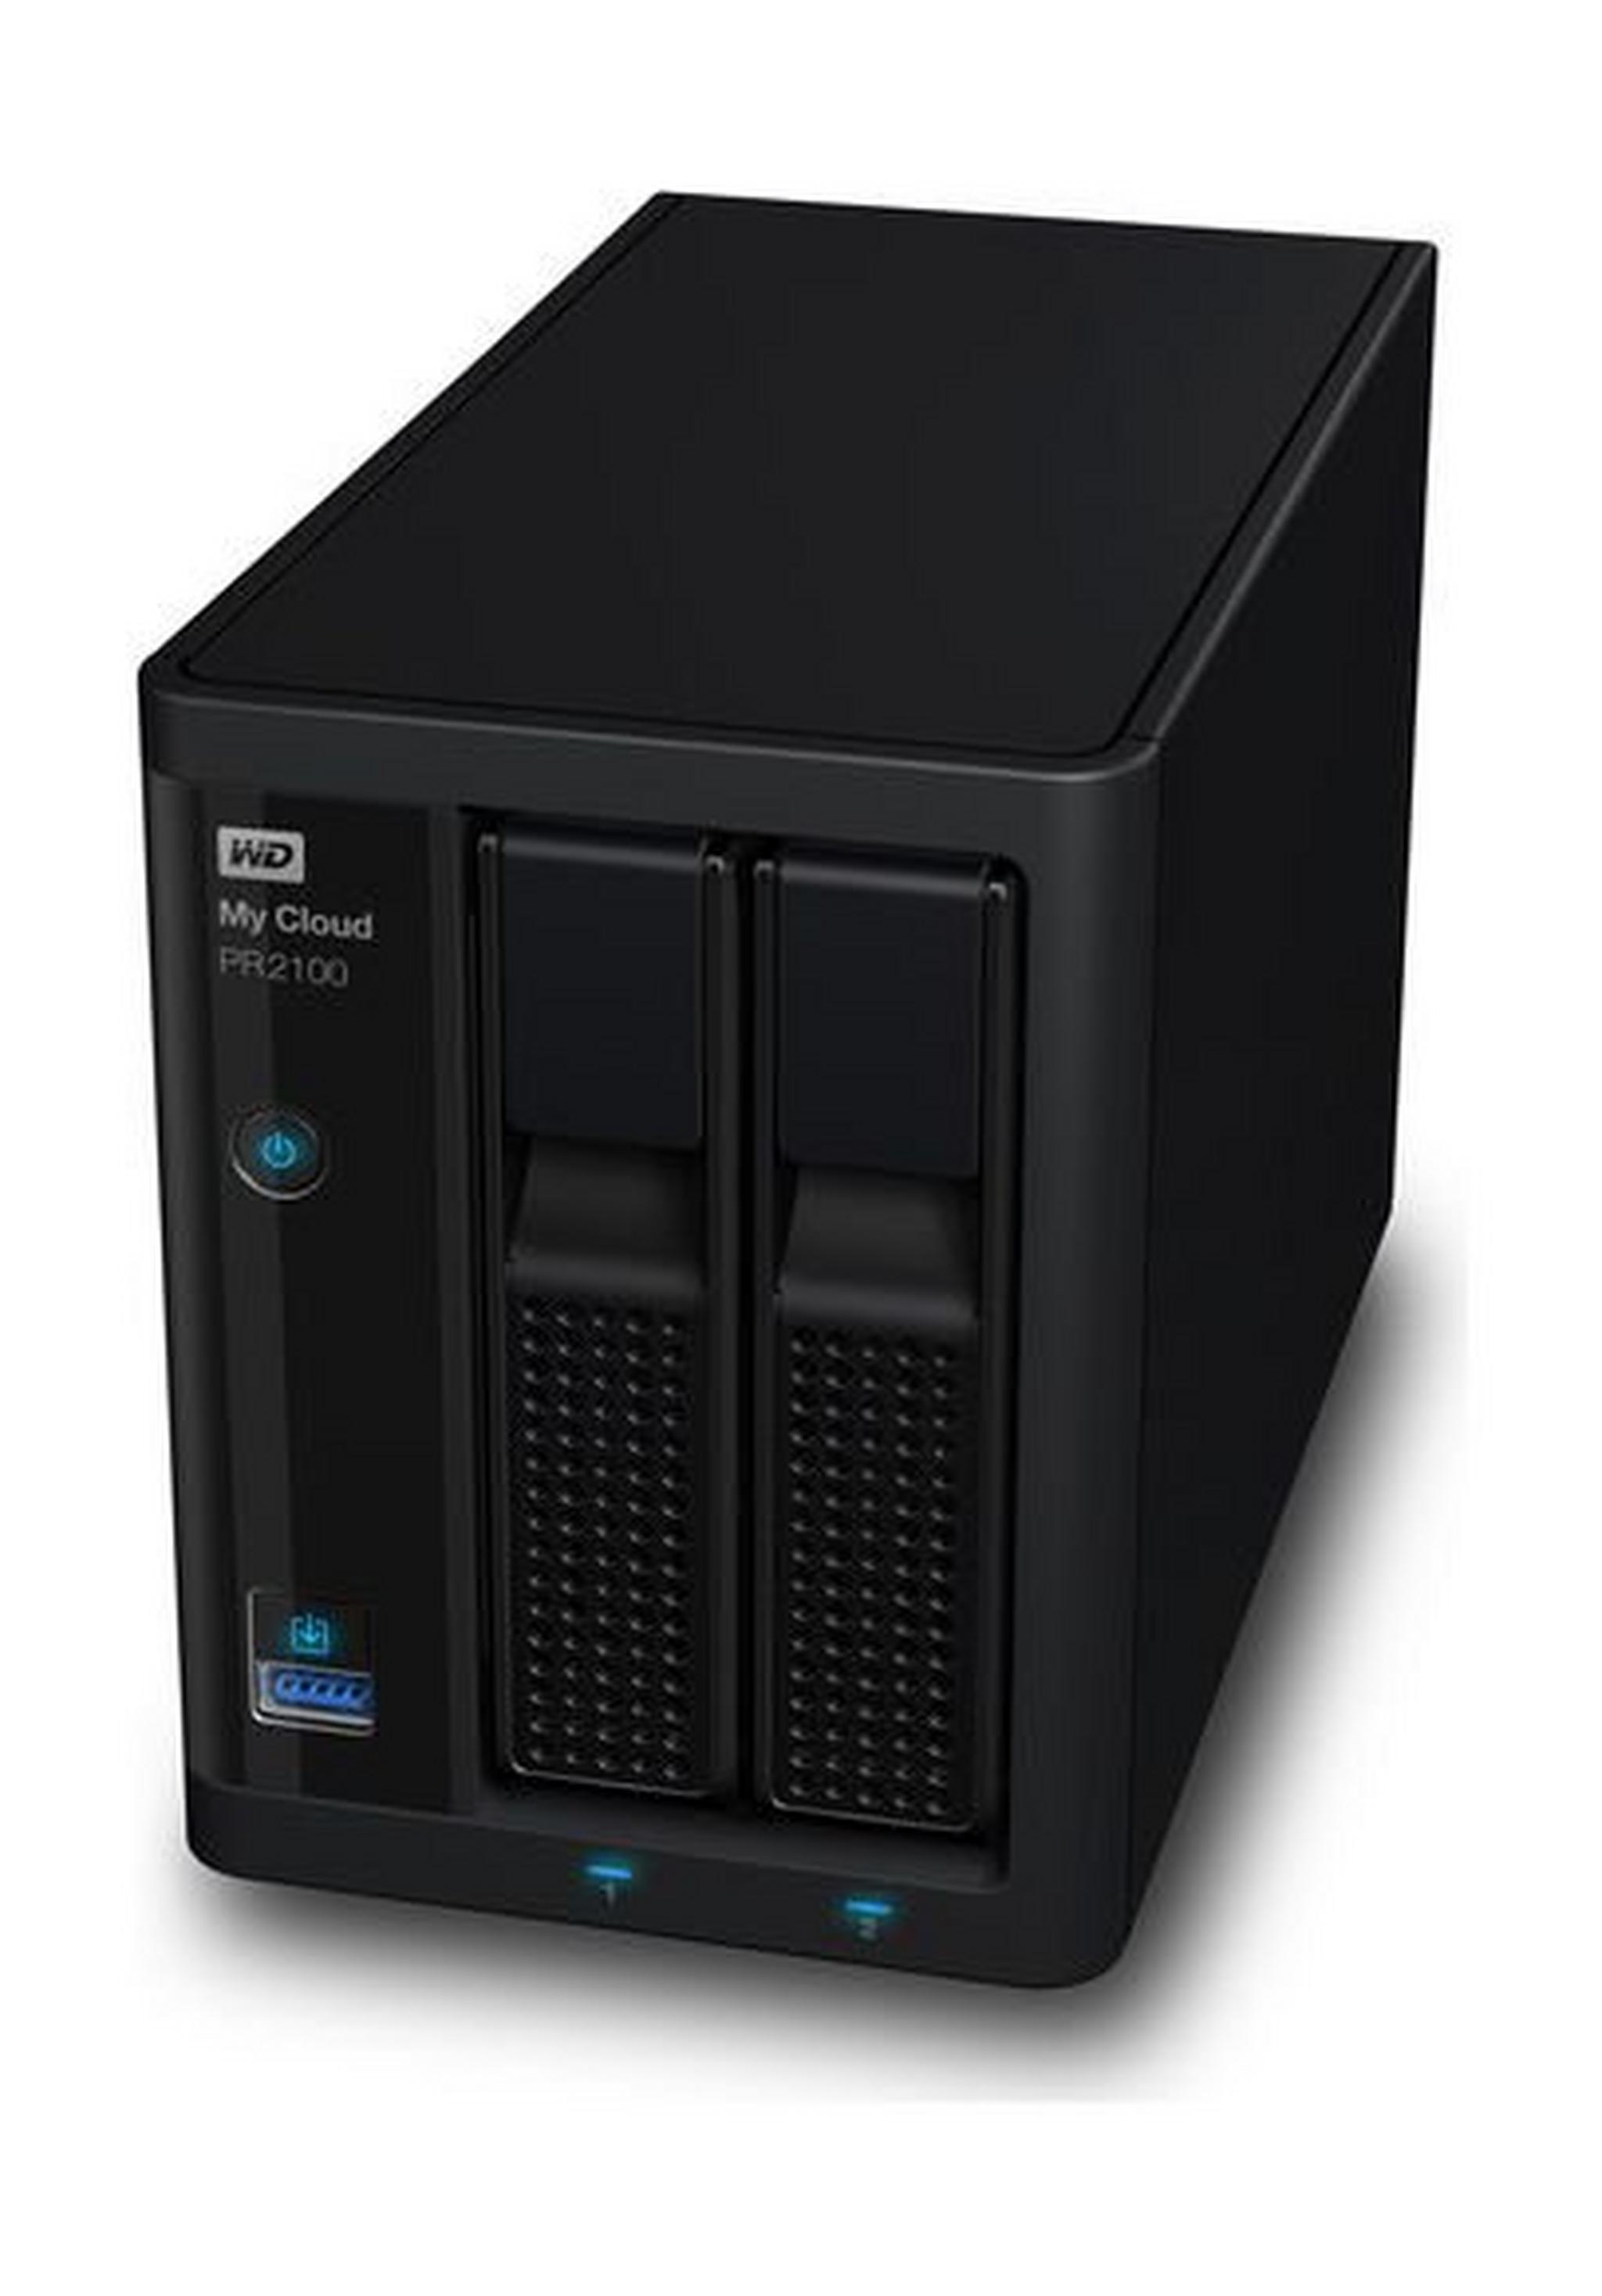 وحدة تخزين للشبكات ماي كلاود بي آر٢١٠٠ بتخزين كلاود من ويسترن ديجيتال – ٢ منفذ قرص صلب سعة ٨ تيرا بايت (WDBBCL0080NBK)